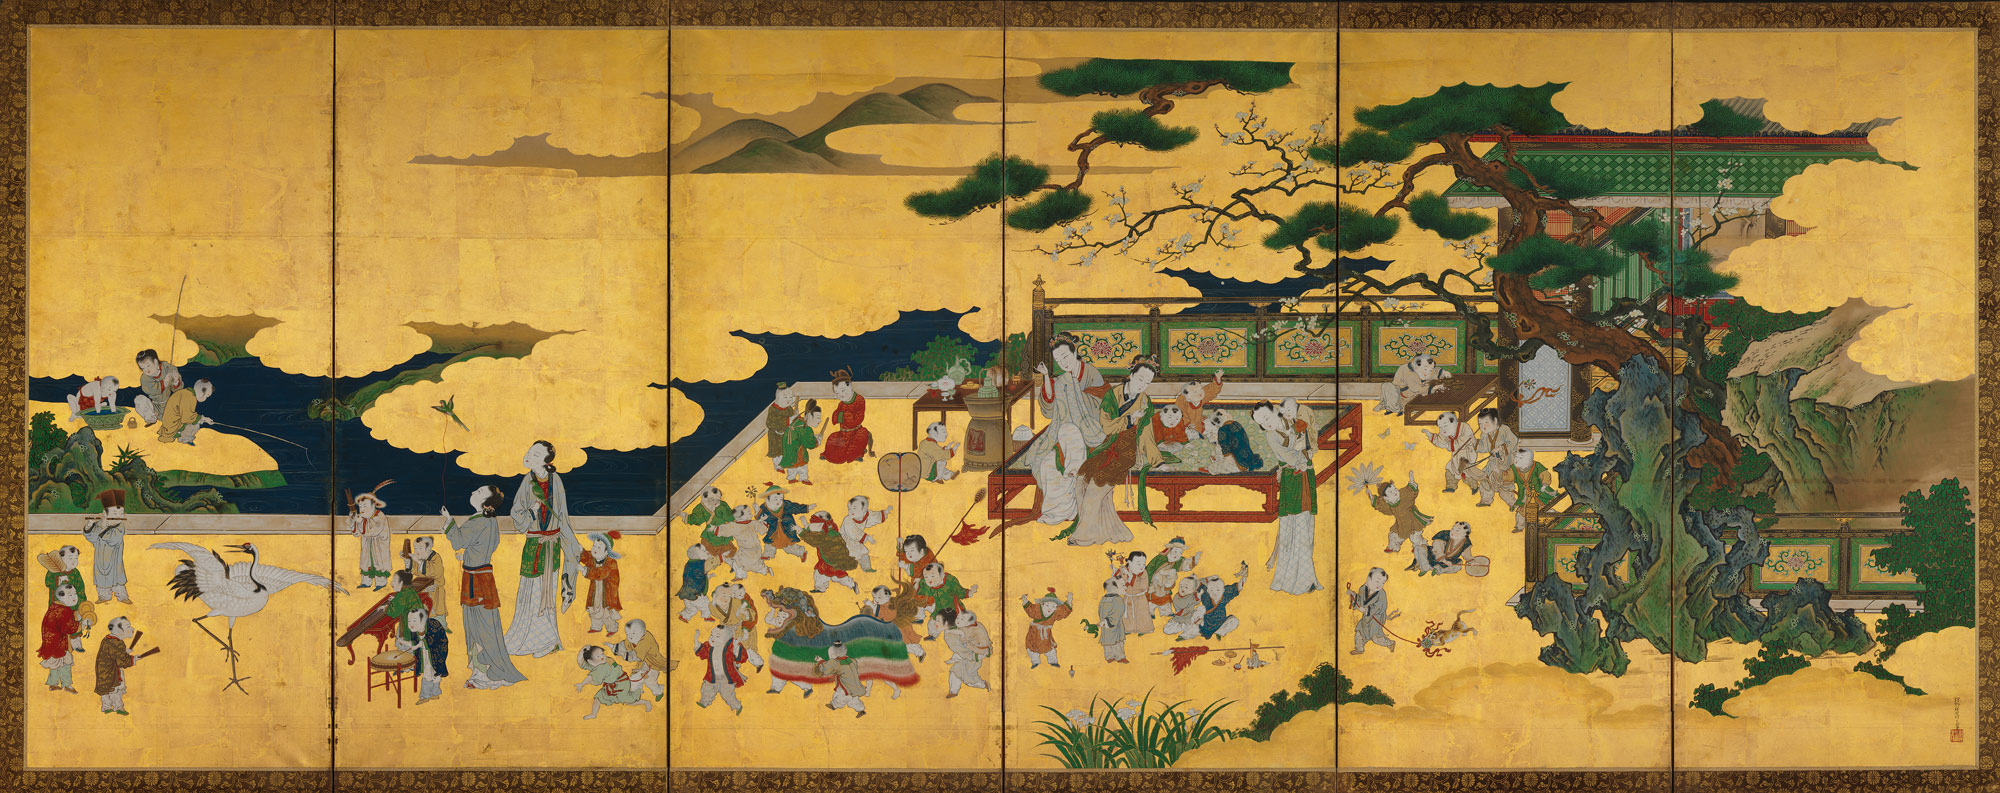 Fredag 11 september – Edo perioden i Japan